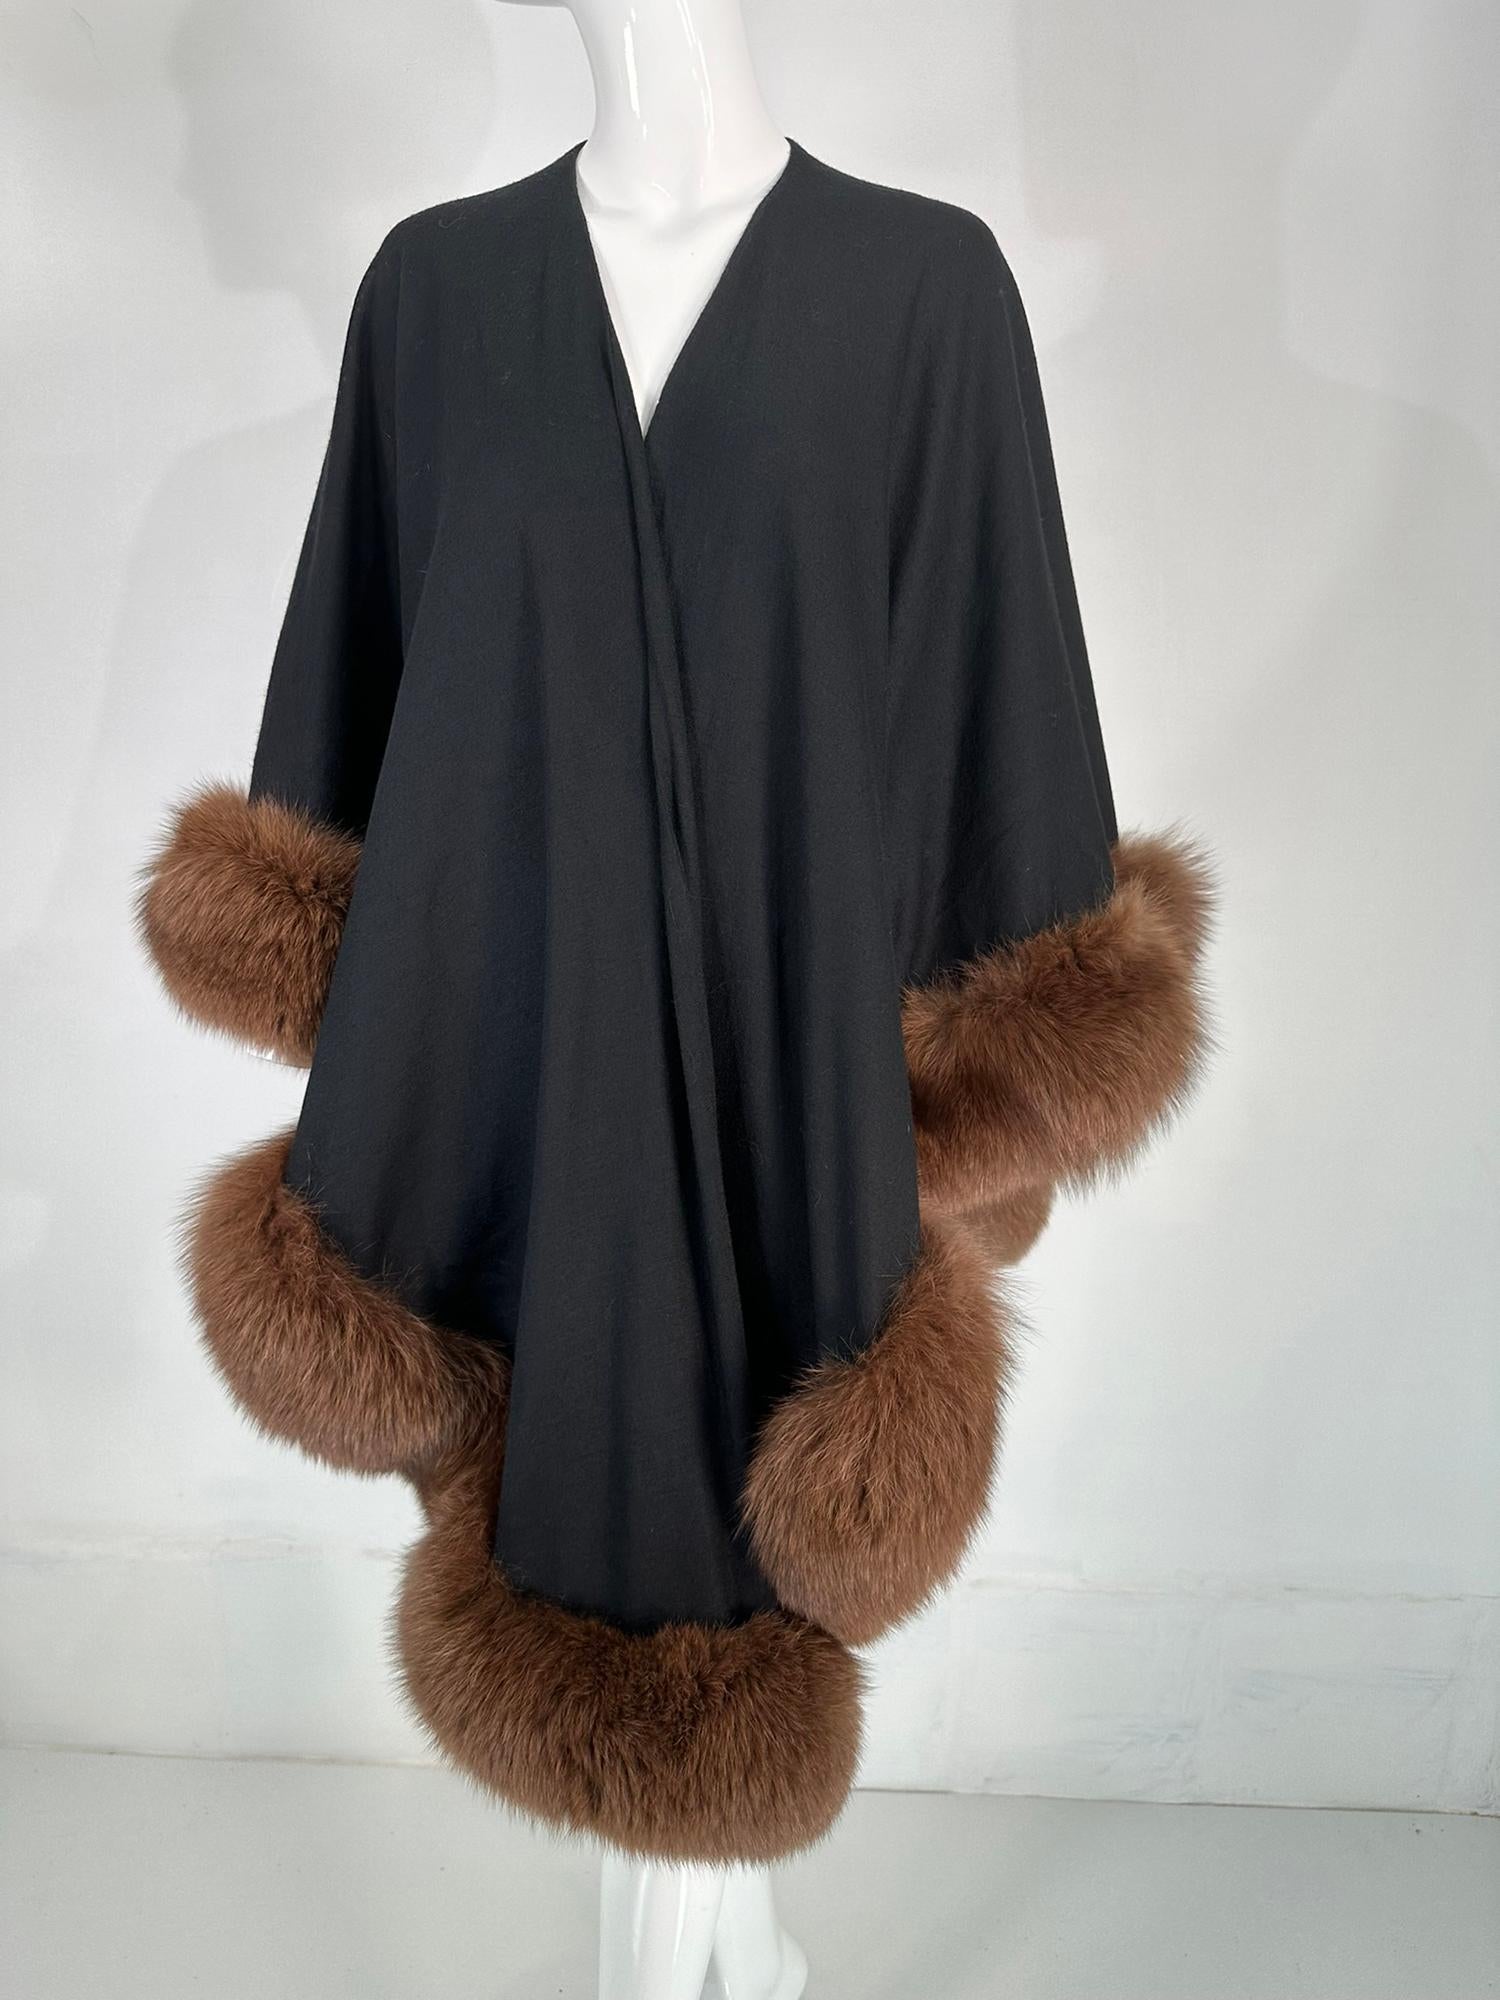 Cape/wrap Adrienne Landau en laine noire bordée de zibeline, datant des années 1990. Une belle cape/enveloppe parfaite pour les événements de jour ou de soirée. Cette cape en laine chaude est facile à porter. Elle est ouverte sur le devant, plus